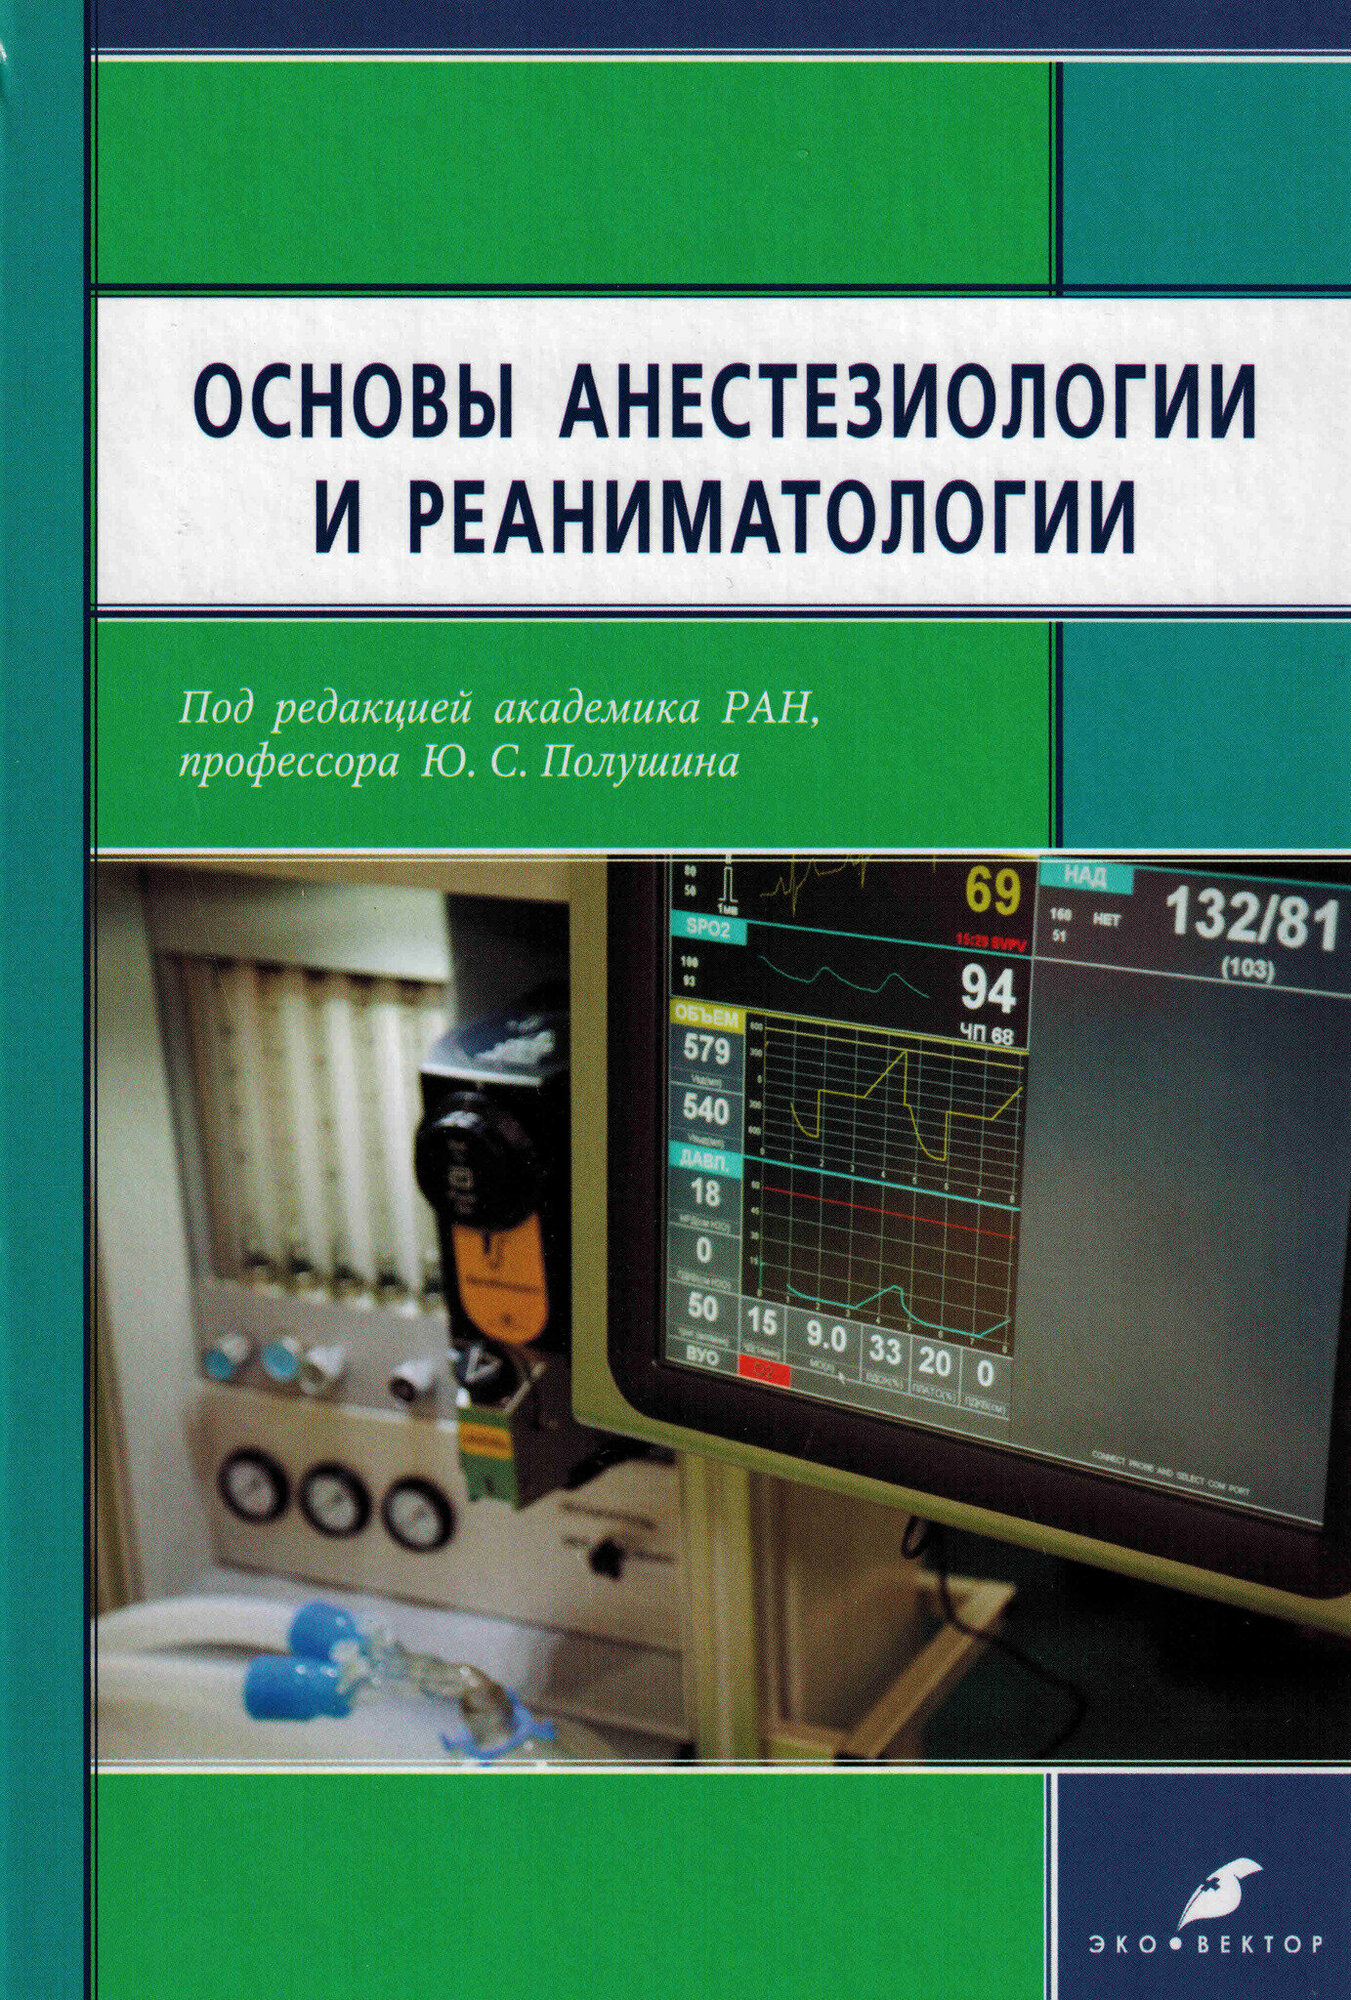 Основы анестезиологии и реаниматологии - фото №1